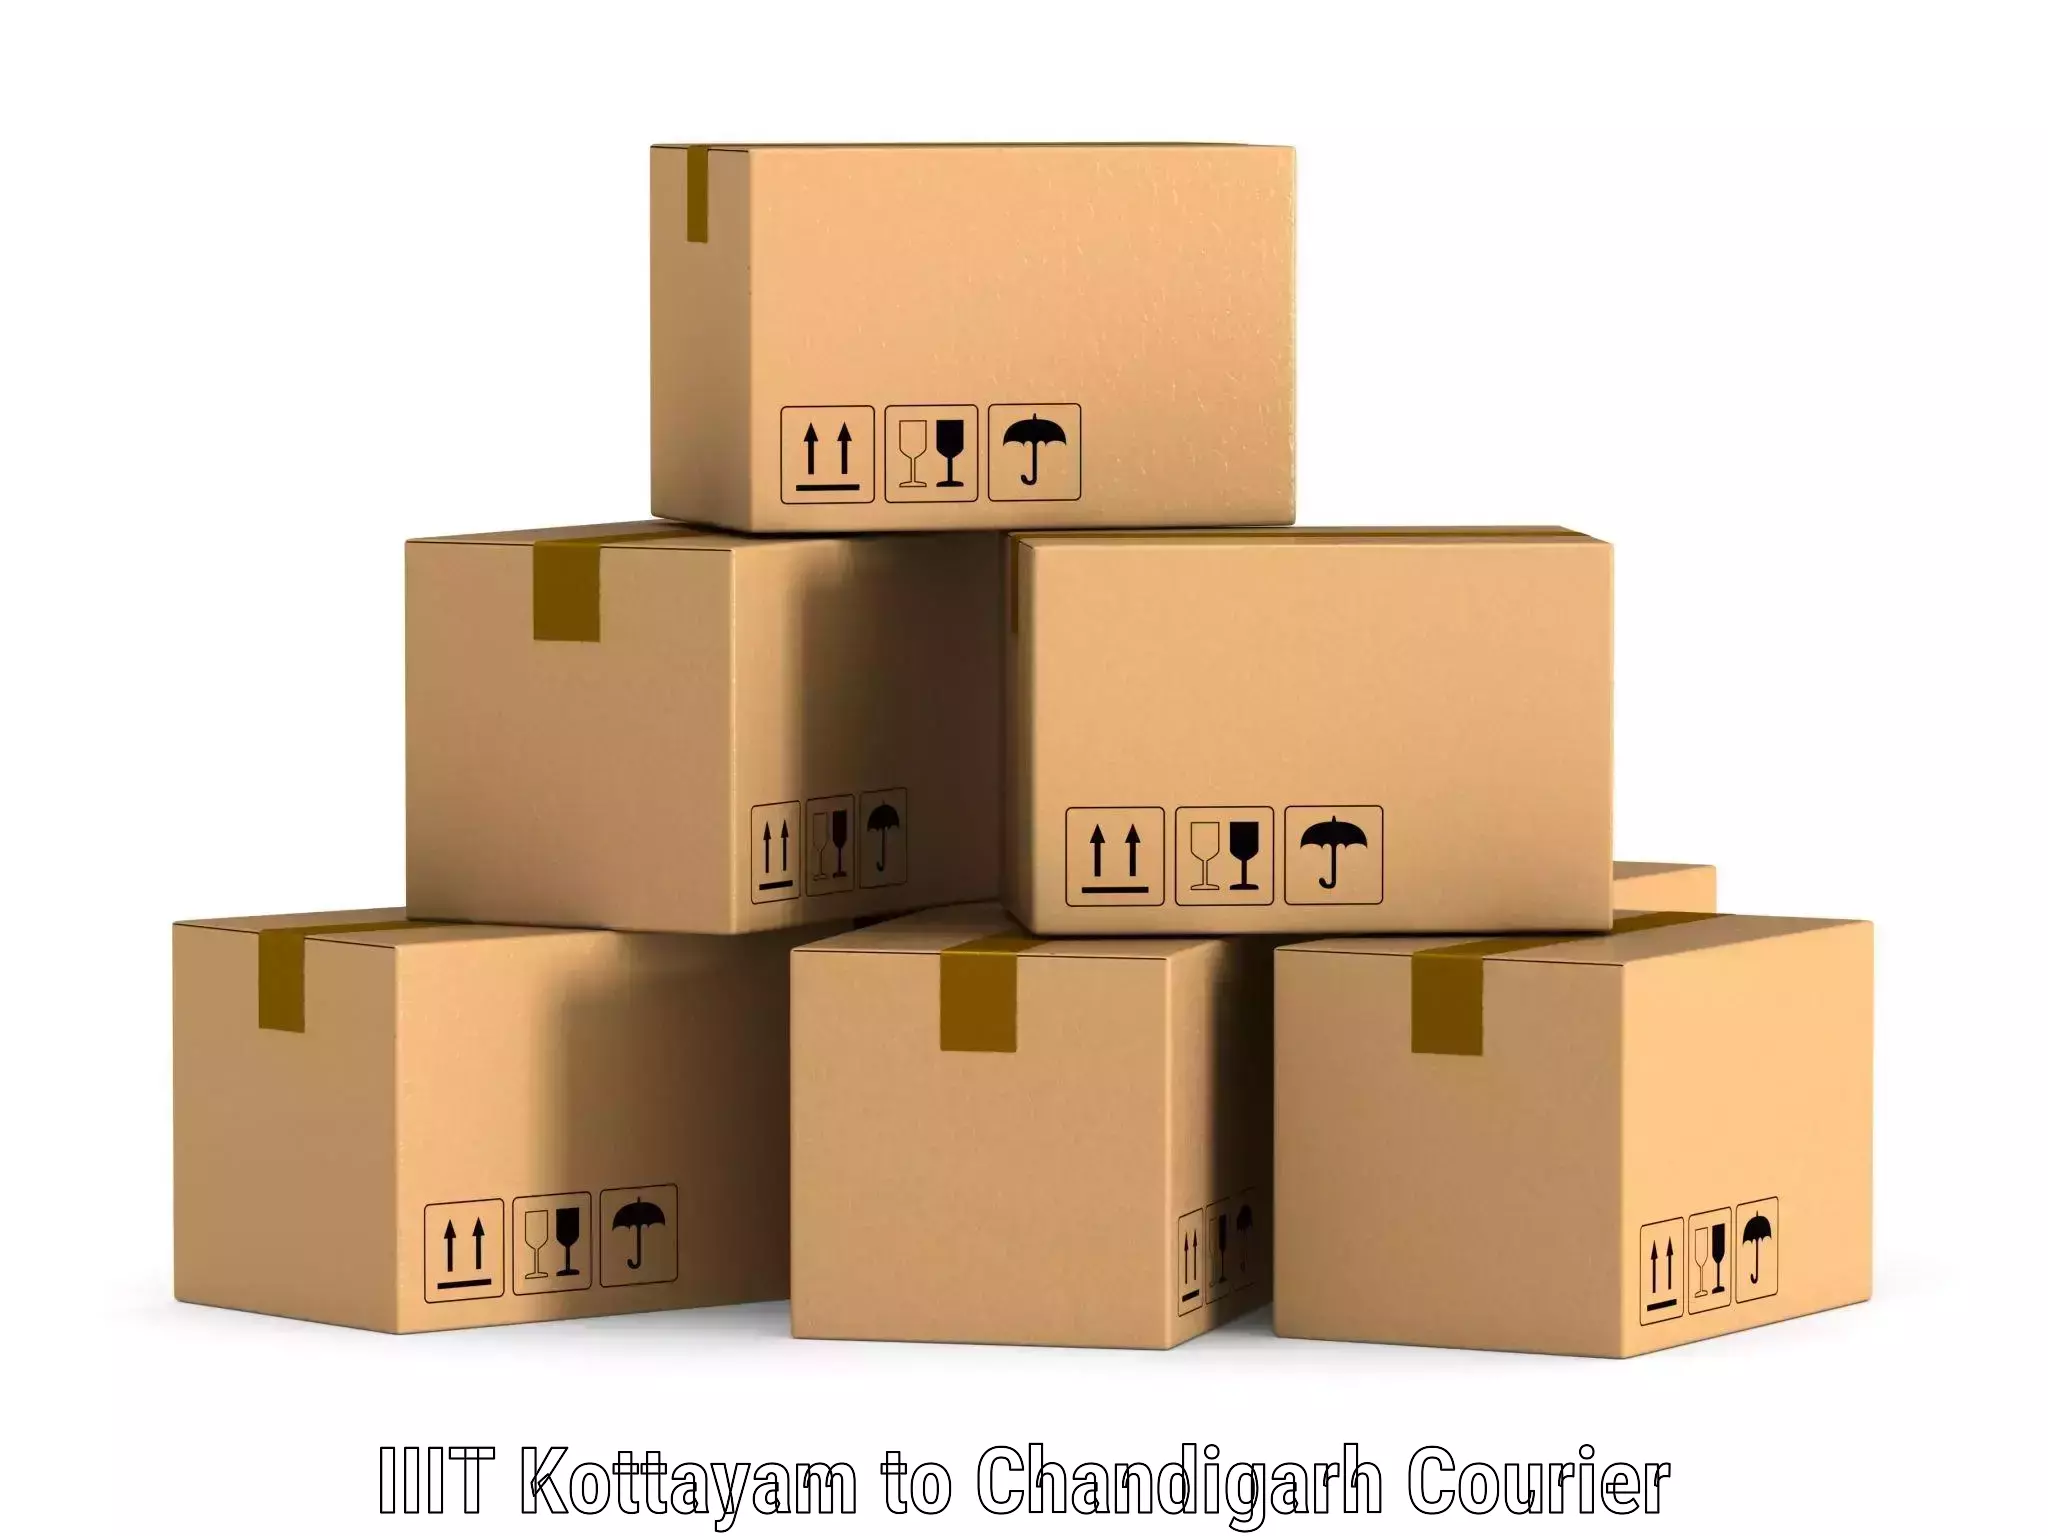 Smart parcel solutions IIIT Kottayam to Chandigarh